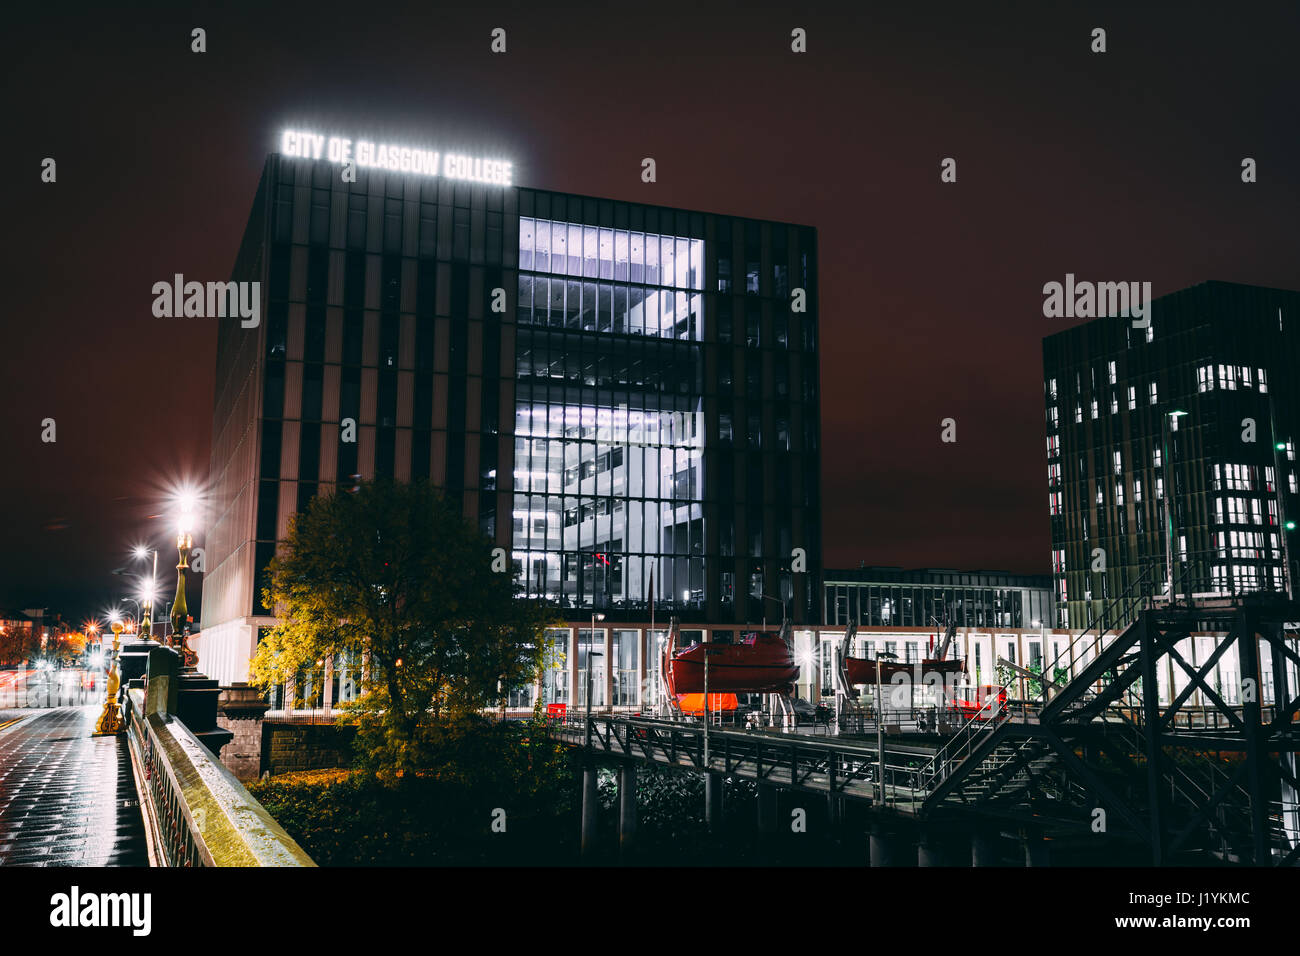 La città di Glasgow College, Riverside Campus a notte. Foto Stock